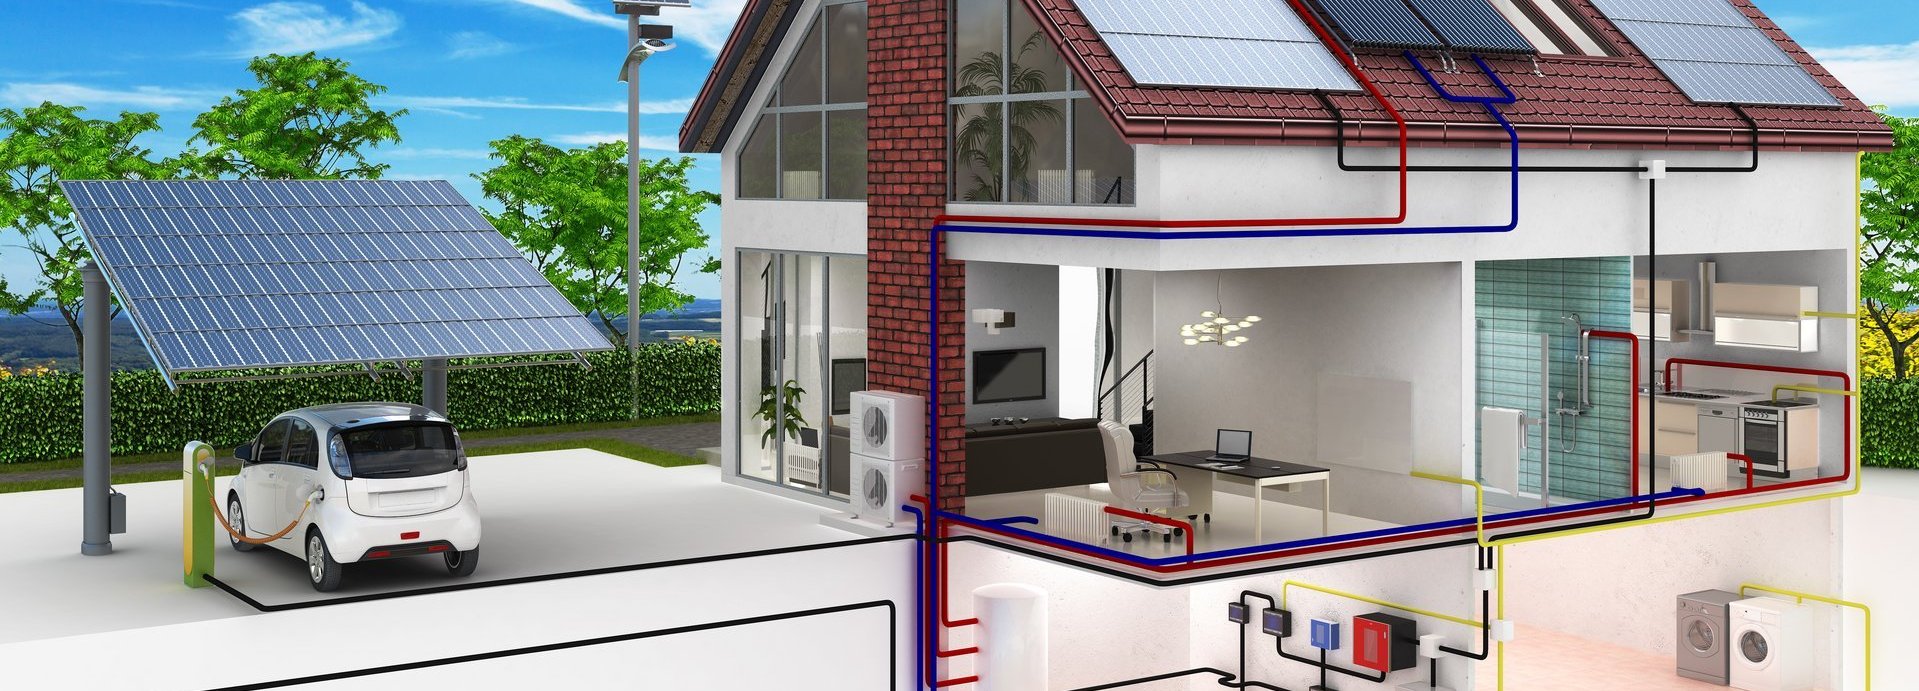 Konzept eines Hauses mit Erneuerbaren Energien und Elektroauto